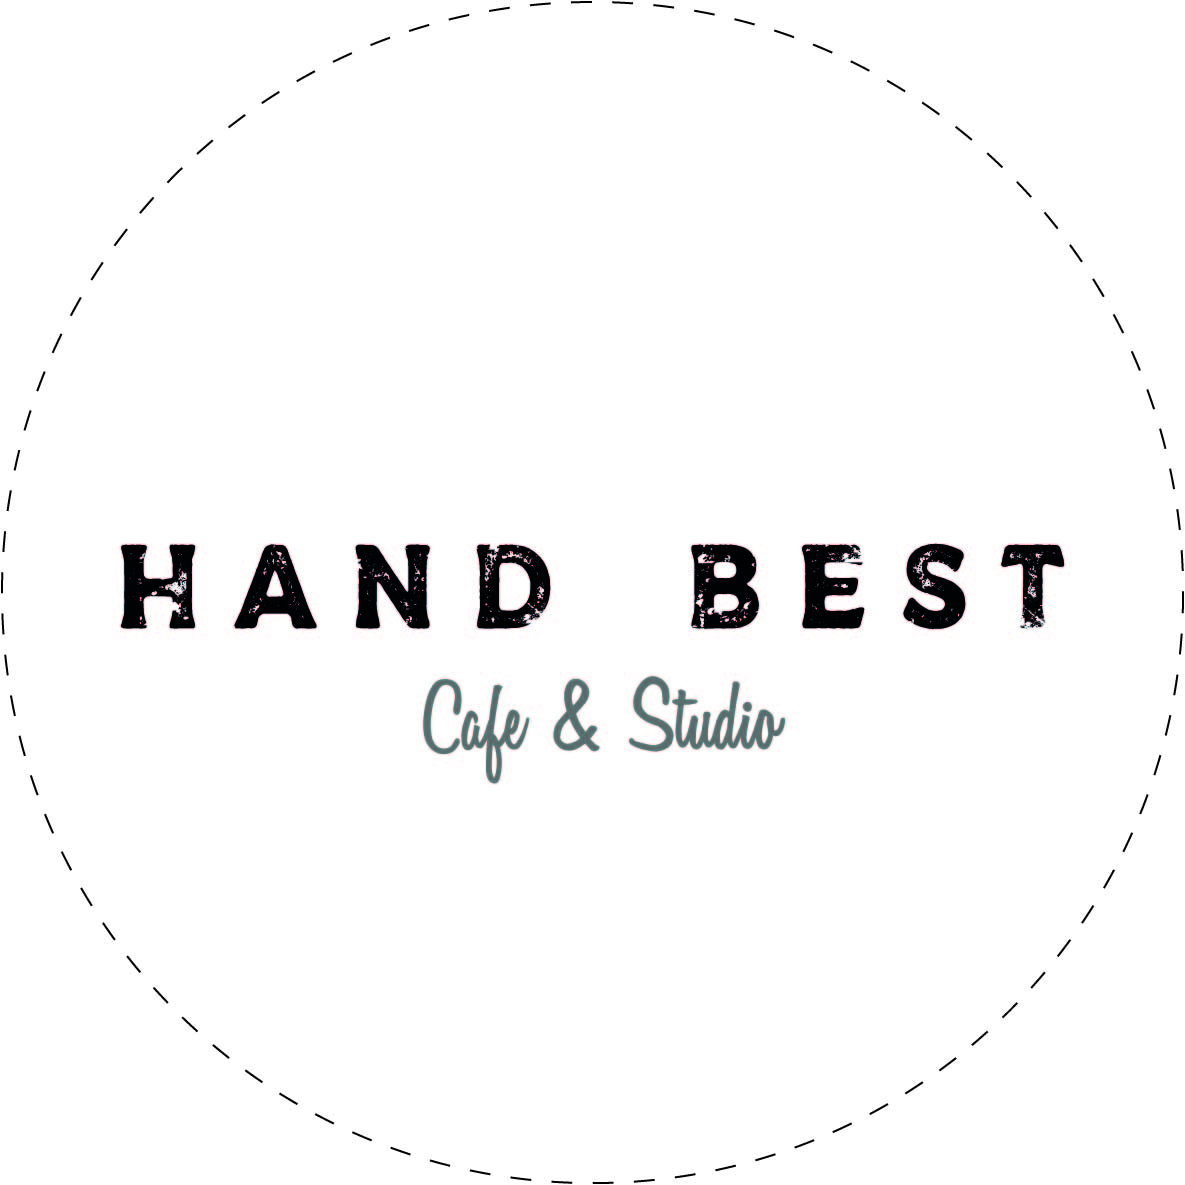 HAND BEST cafe & studio